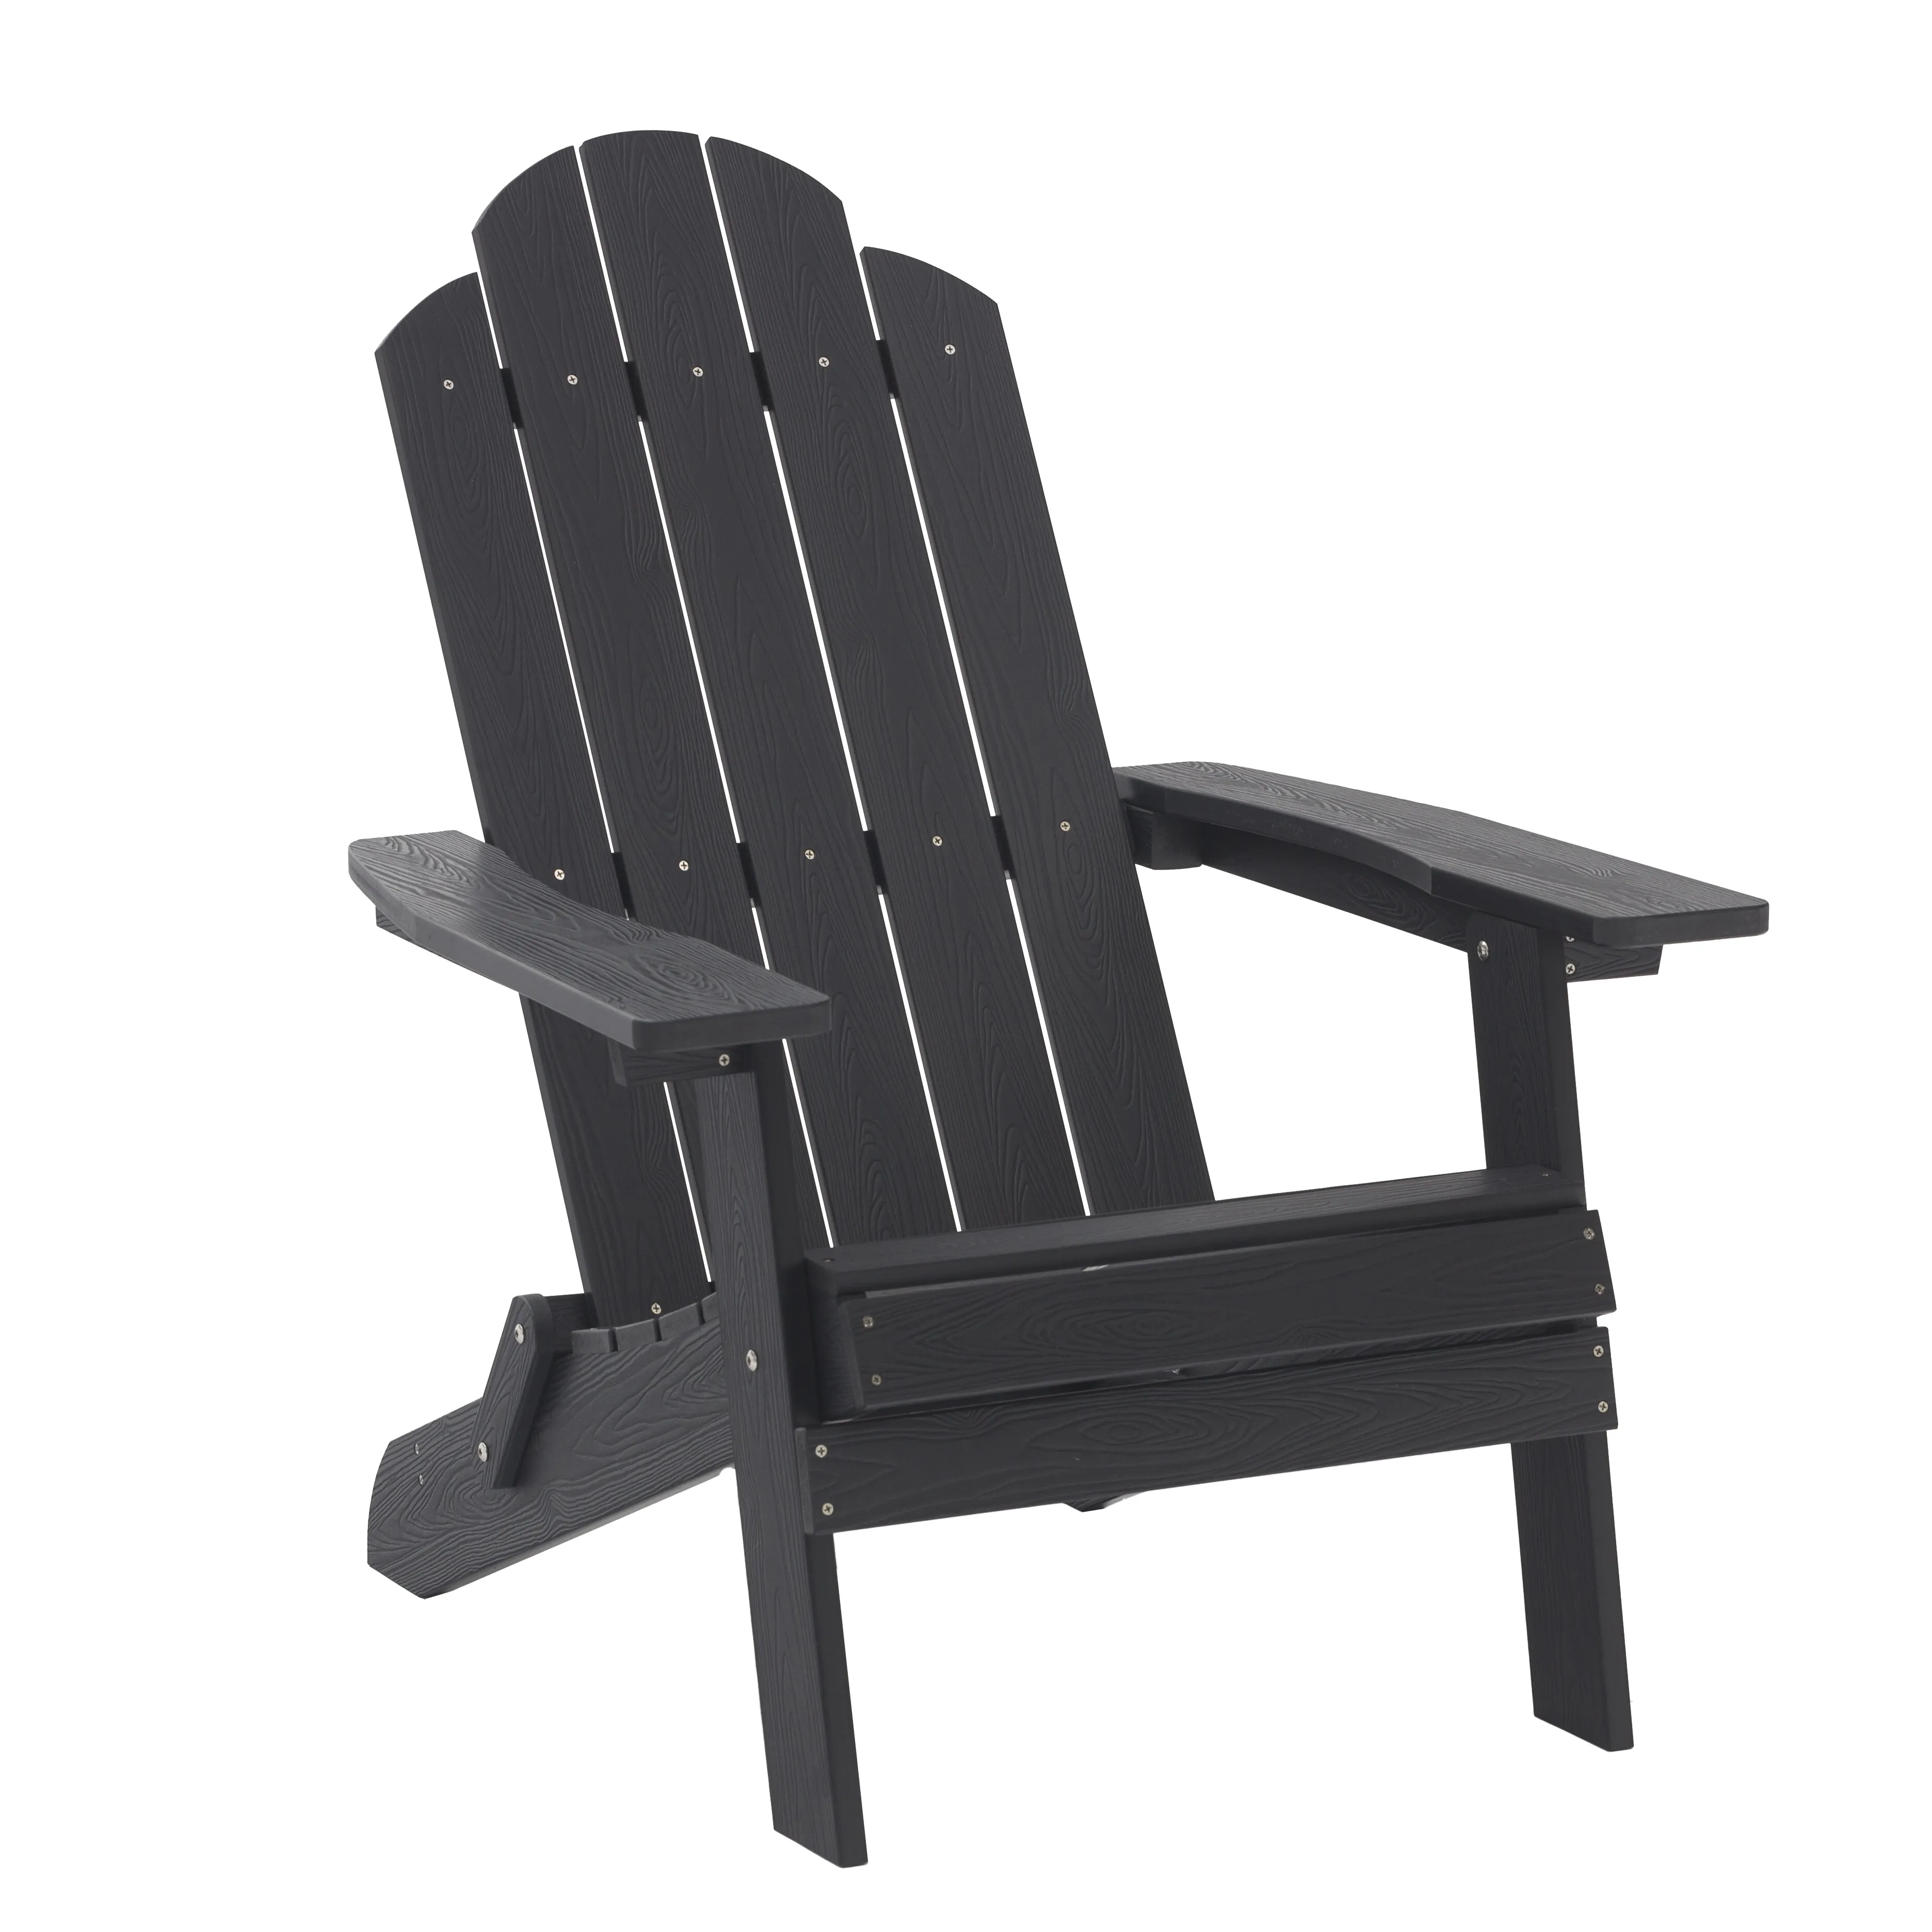 HIPS plastica legno pieghevole sedia adirondack giardino esterno utilizzando sedie in materiale impermeabile nero